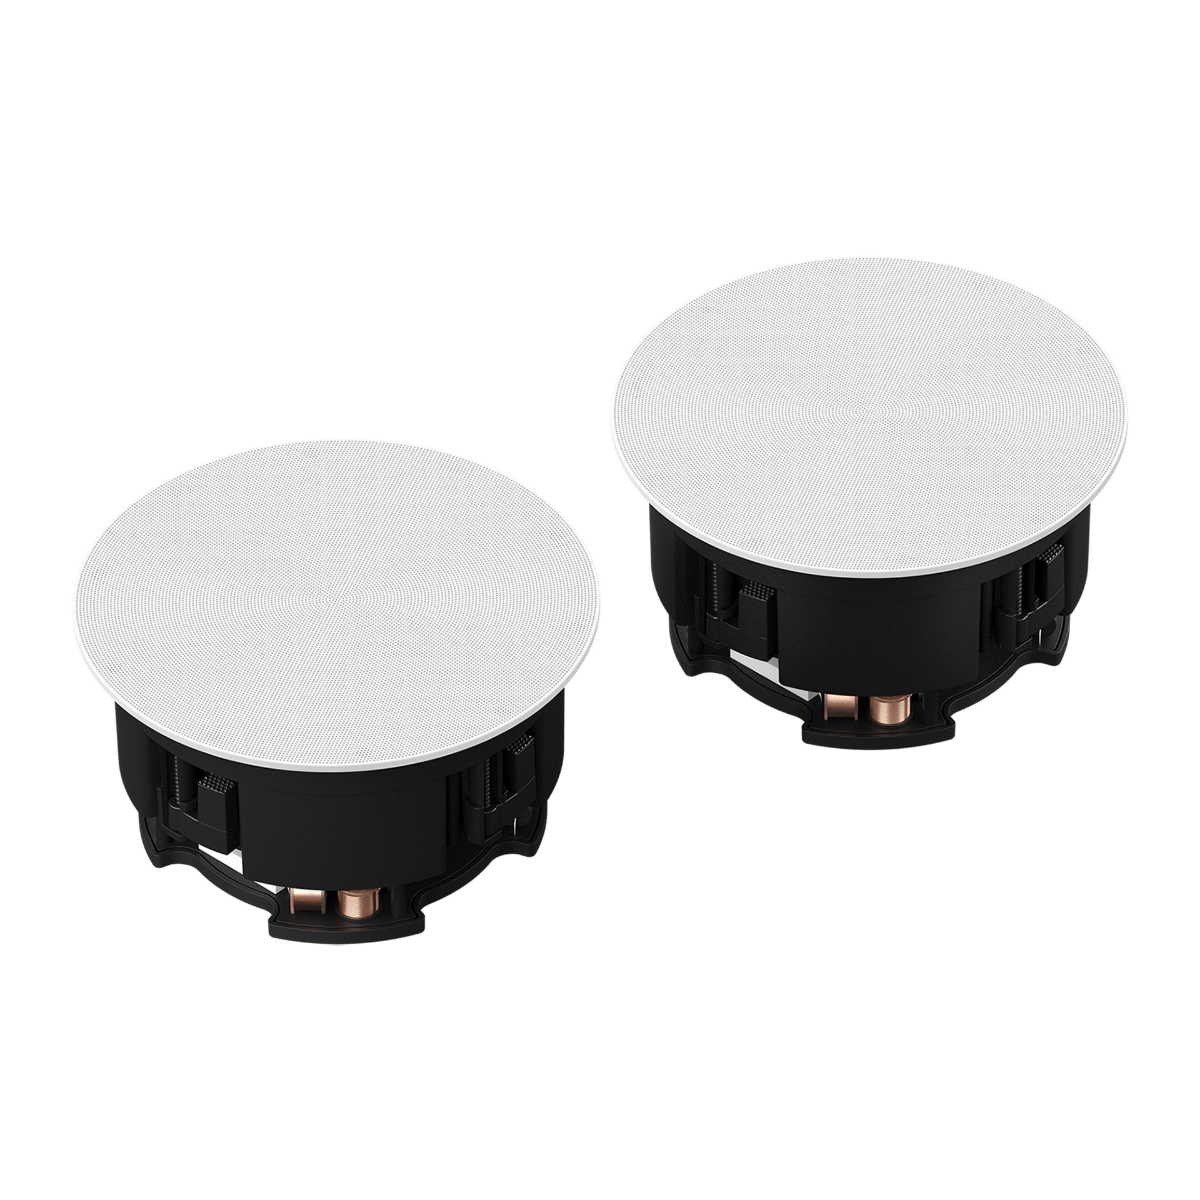 Sonos In-Ceiling Speakers